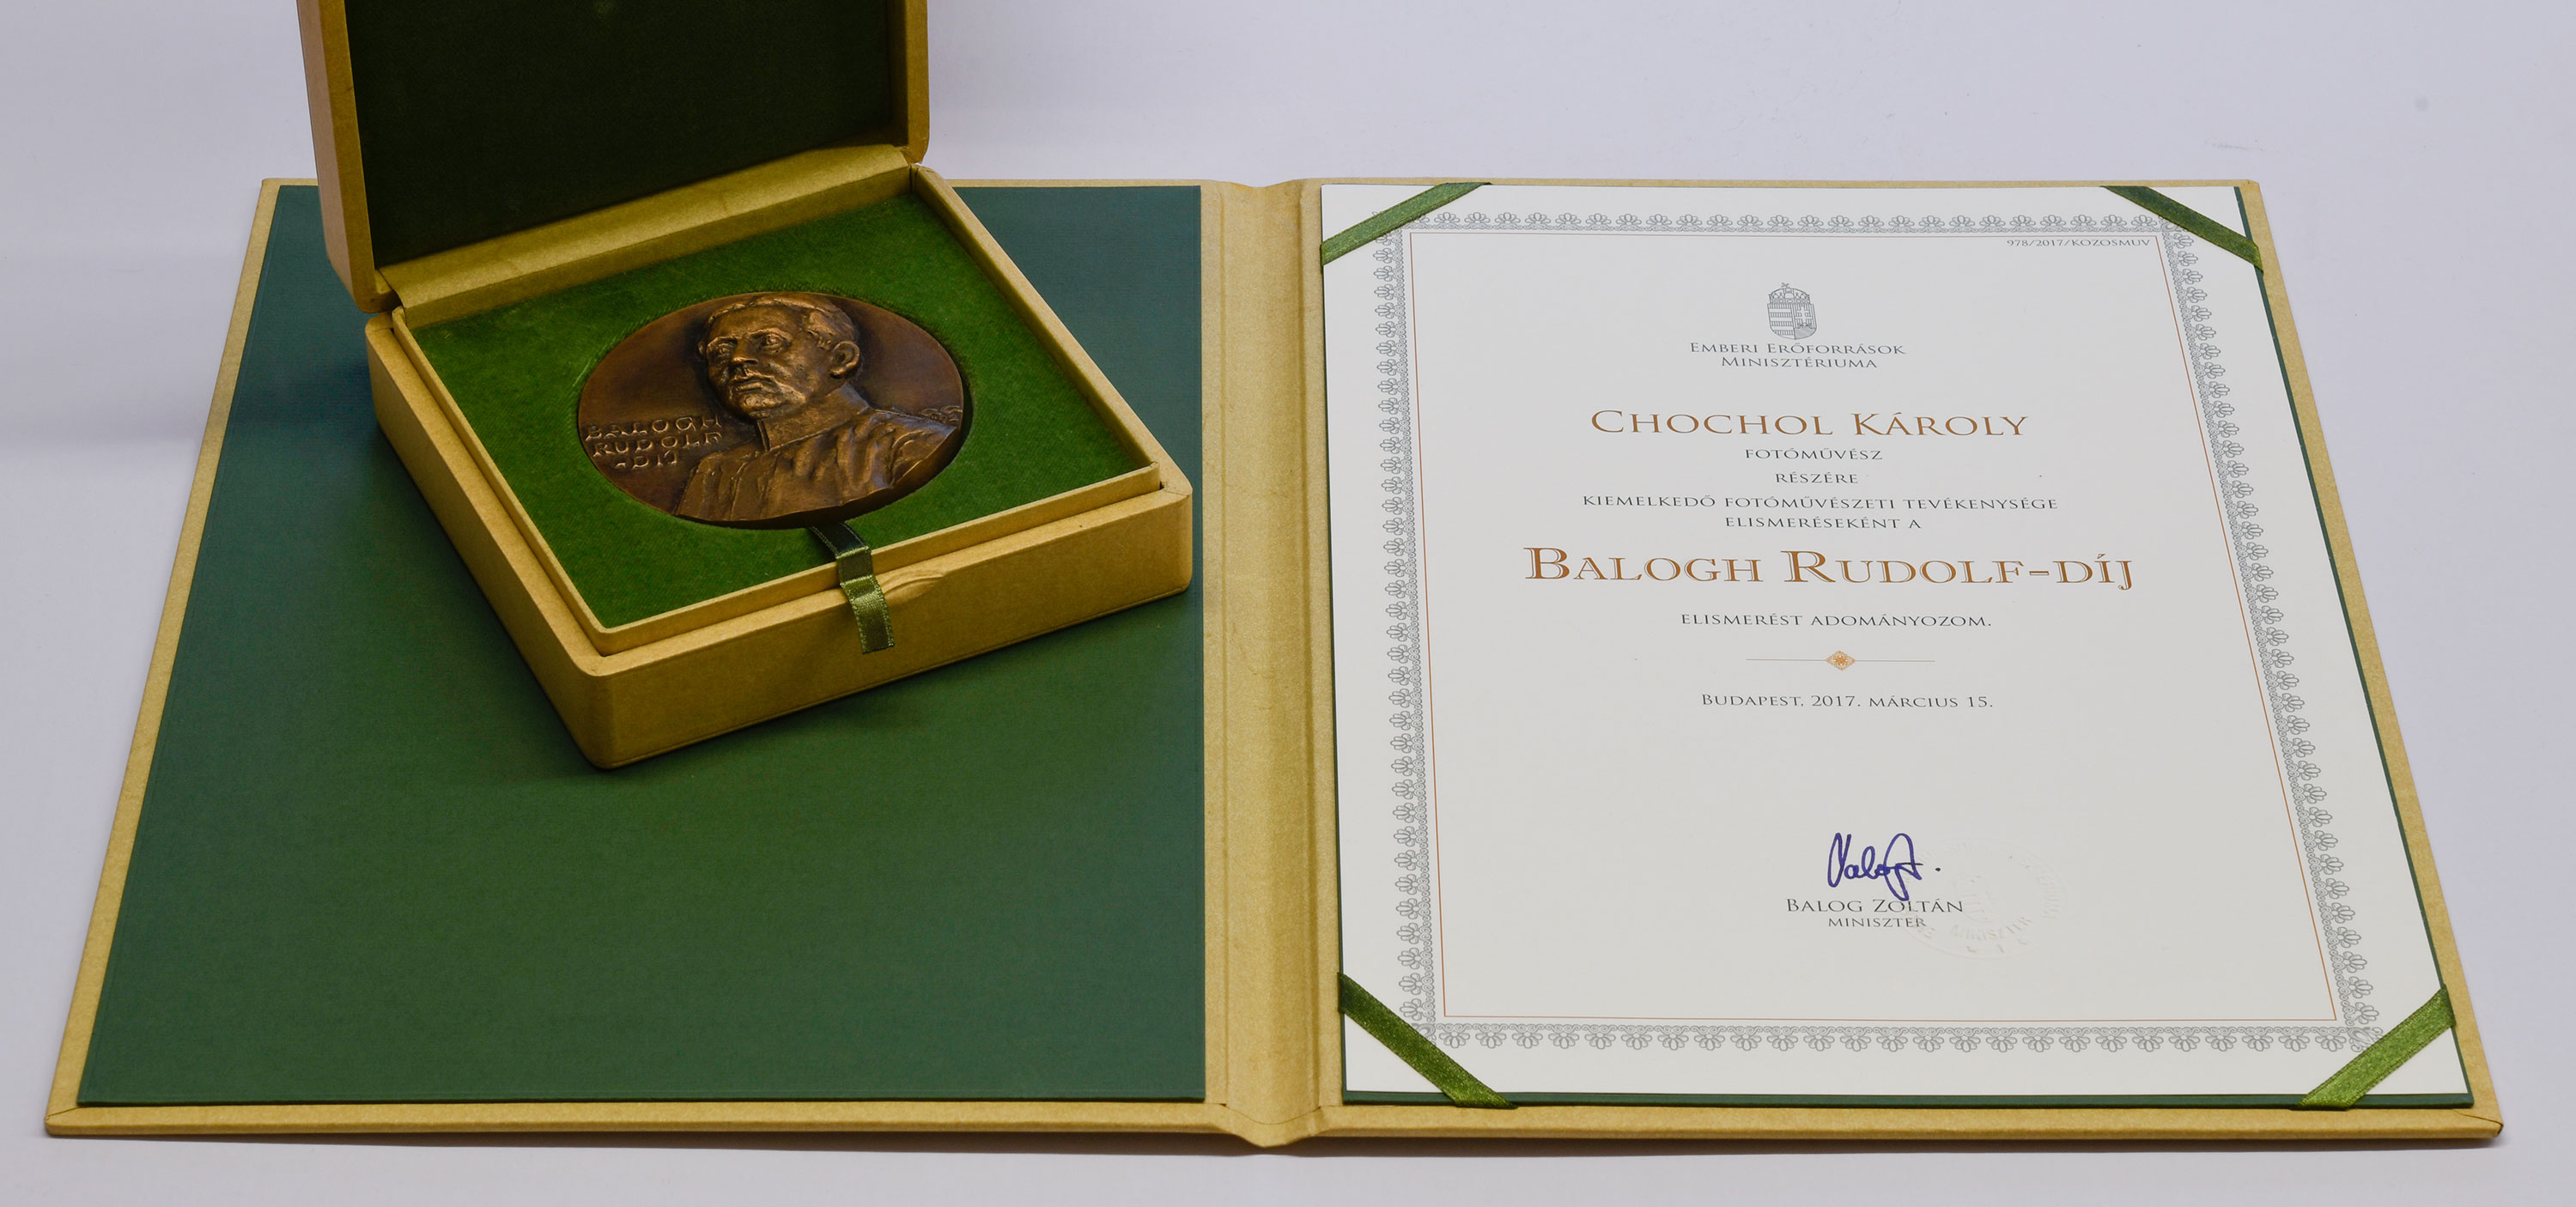 <b>Balogh Rudolf-díj.</b> Emberi Erőforrások Minisztériuma, Balog Zoltán minisztertől, 2017. március 15. <br><i>„Balogh Rudolf század eleji fotográfusról, fotóművészeti szaklapok alapítójáról, fotós hadi tudósítóról elnevezett kitüntetés a legjelentősebb <br>fotóművészeti díj Magyarországon. 2017-ben kaptam meg. Érdekesség, hogy Balogh Rudolf <br>hagyatékának egy részét én mentettem meg és juttattam a Fotóművész Szövetségnek és a Hadtörténeti Múzeumnak.”<br>(A magyar fotográfia legrangosabb elismerése) oklevél, emlékplakett</i><br><i>(BFL XV.19.g.4.02)</i> 